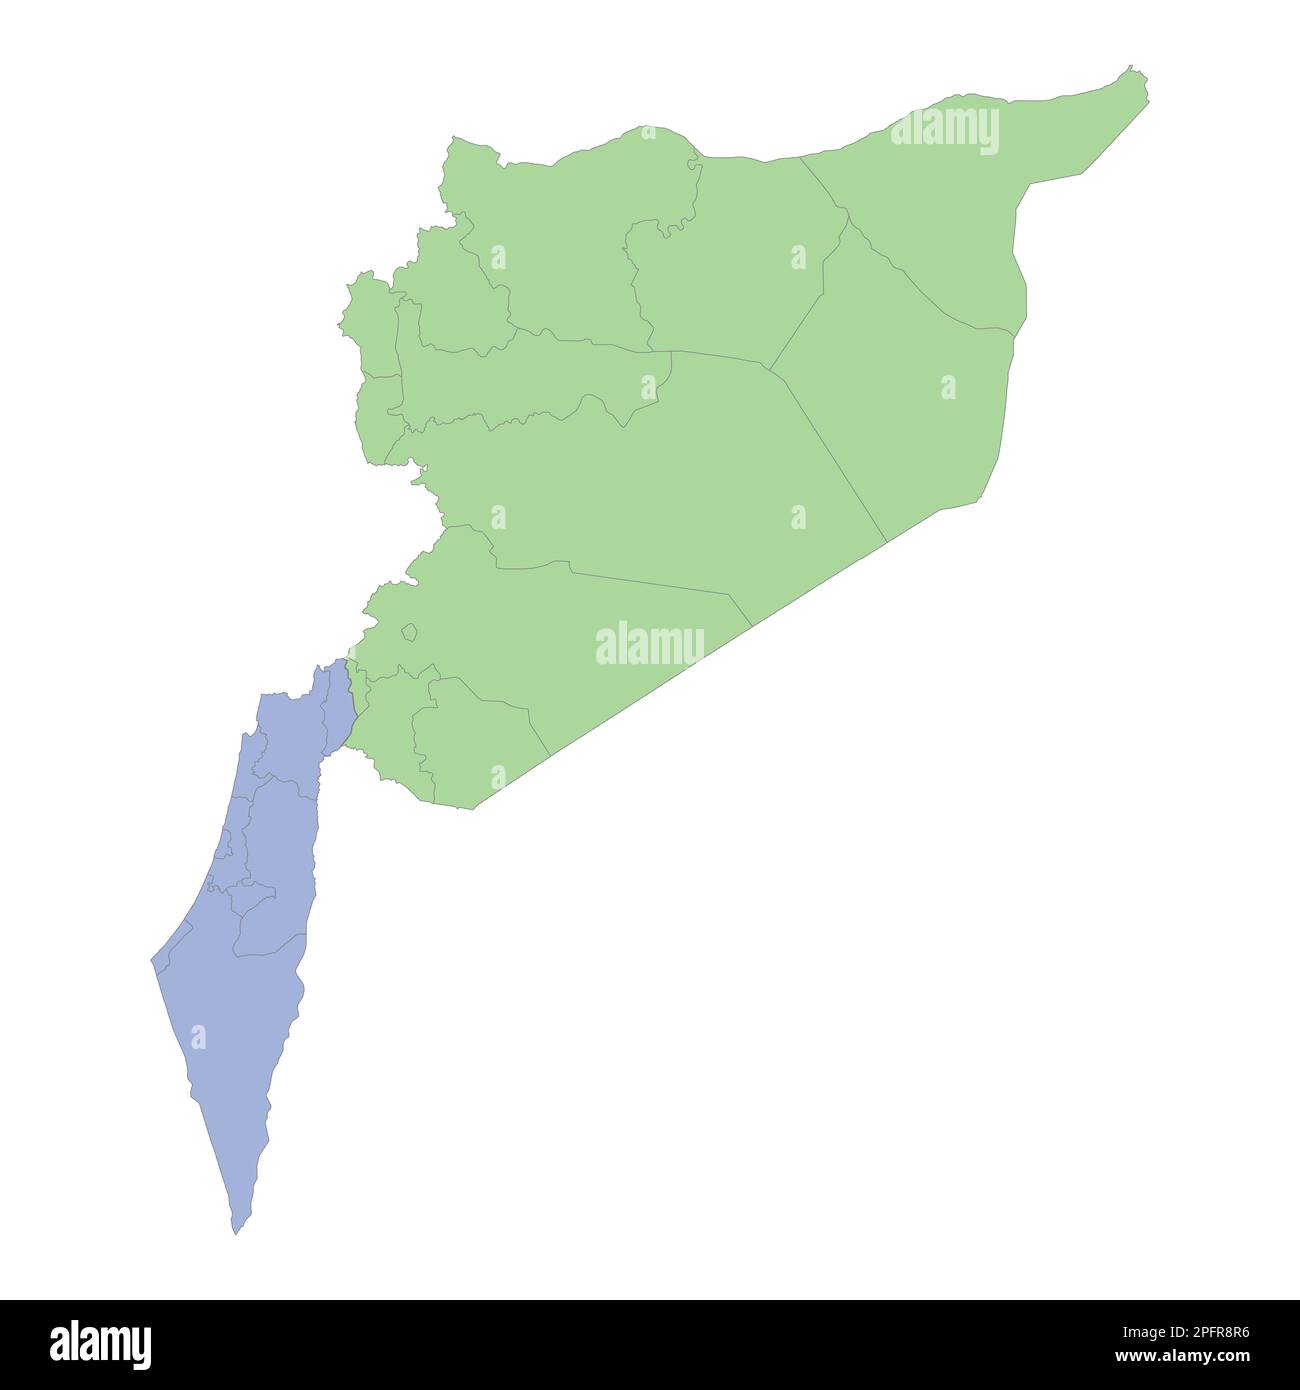 Mappa politica di alta qualità di Israele e Siria con i confini delle regioni o province. Illustrazione vettoriale Illustrazione Vettoriale